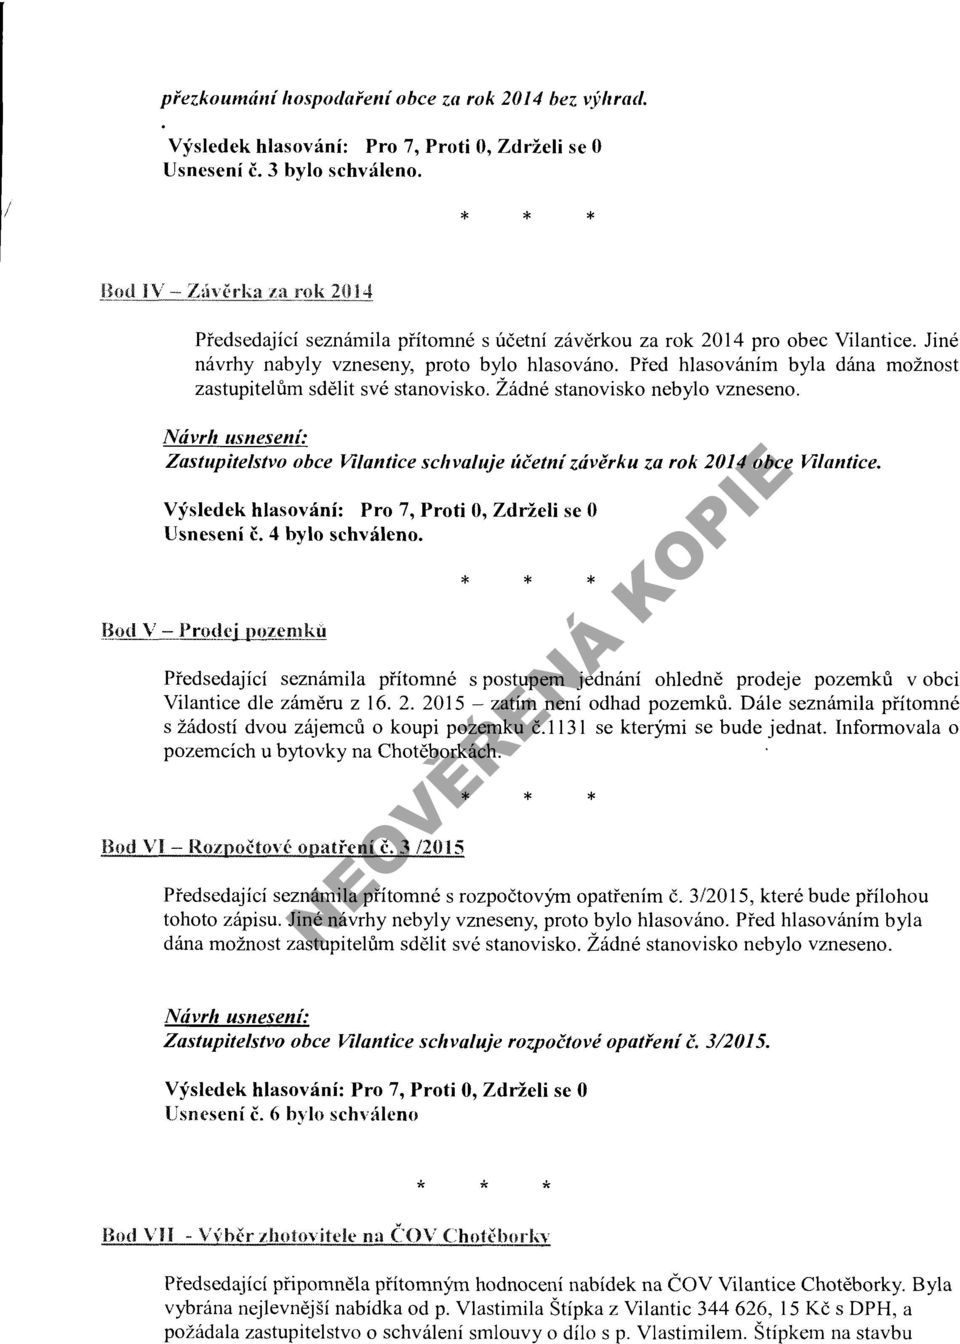 Zastupitelstvo obce Vilantice schvaluje účetní závěrku za rok 2014 obce Vilantice. Usnesení č. 4 bylo schváleno.